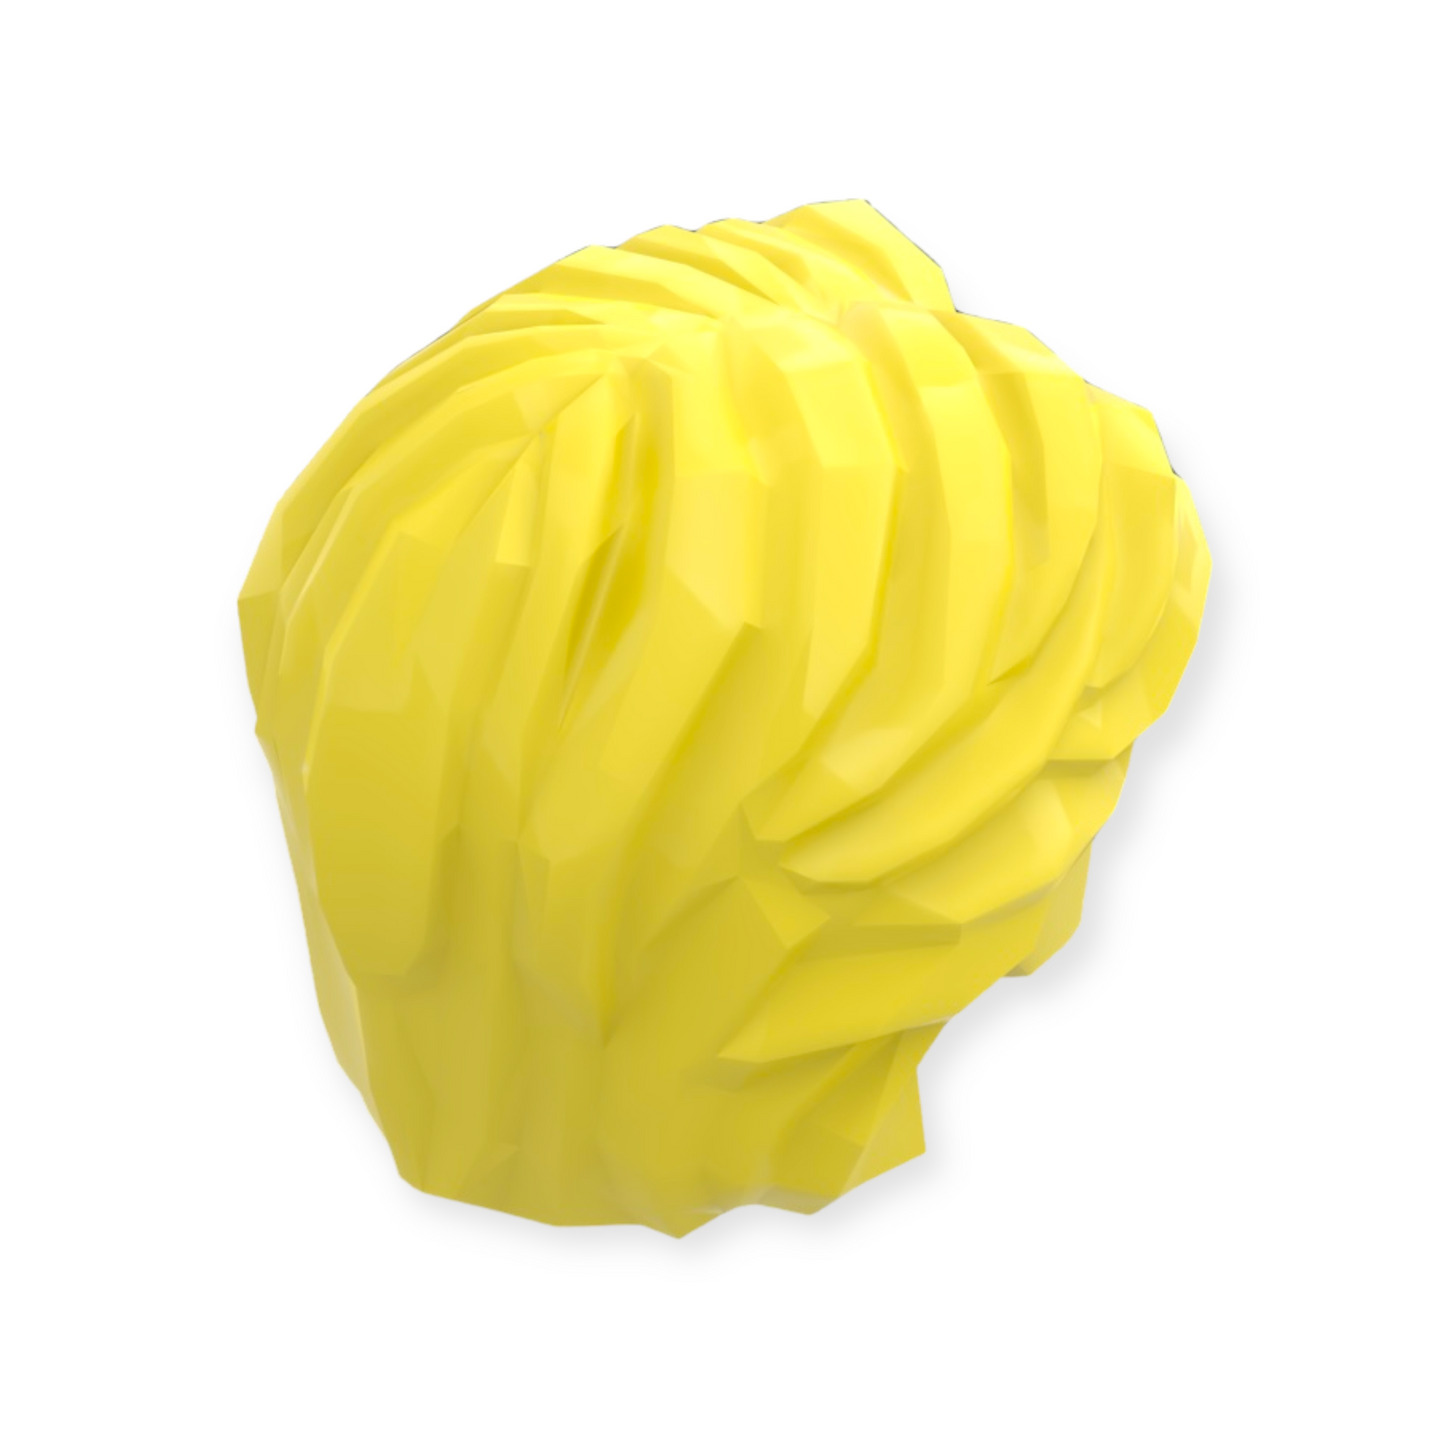 LEGO Frisur Nr 117 - Kurzes gewelltes Haar mit Mittelscheitel - Bright Light Yellow